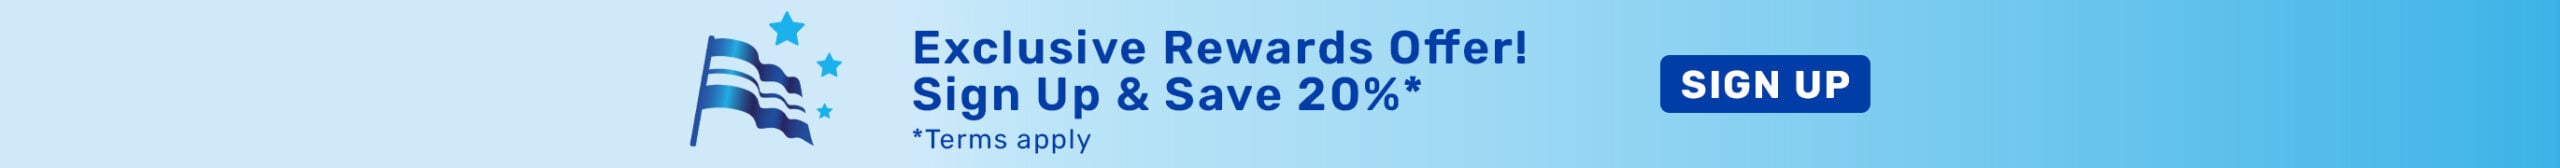 Exclusive Rewards Offer